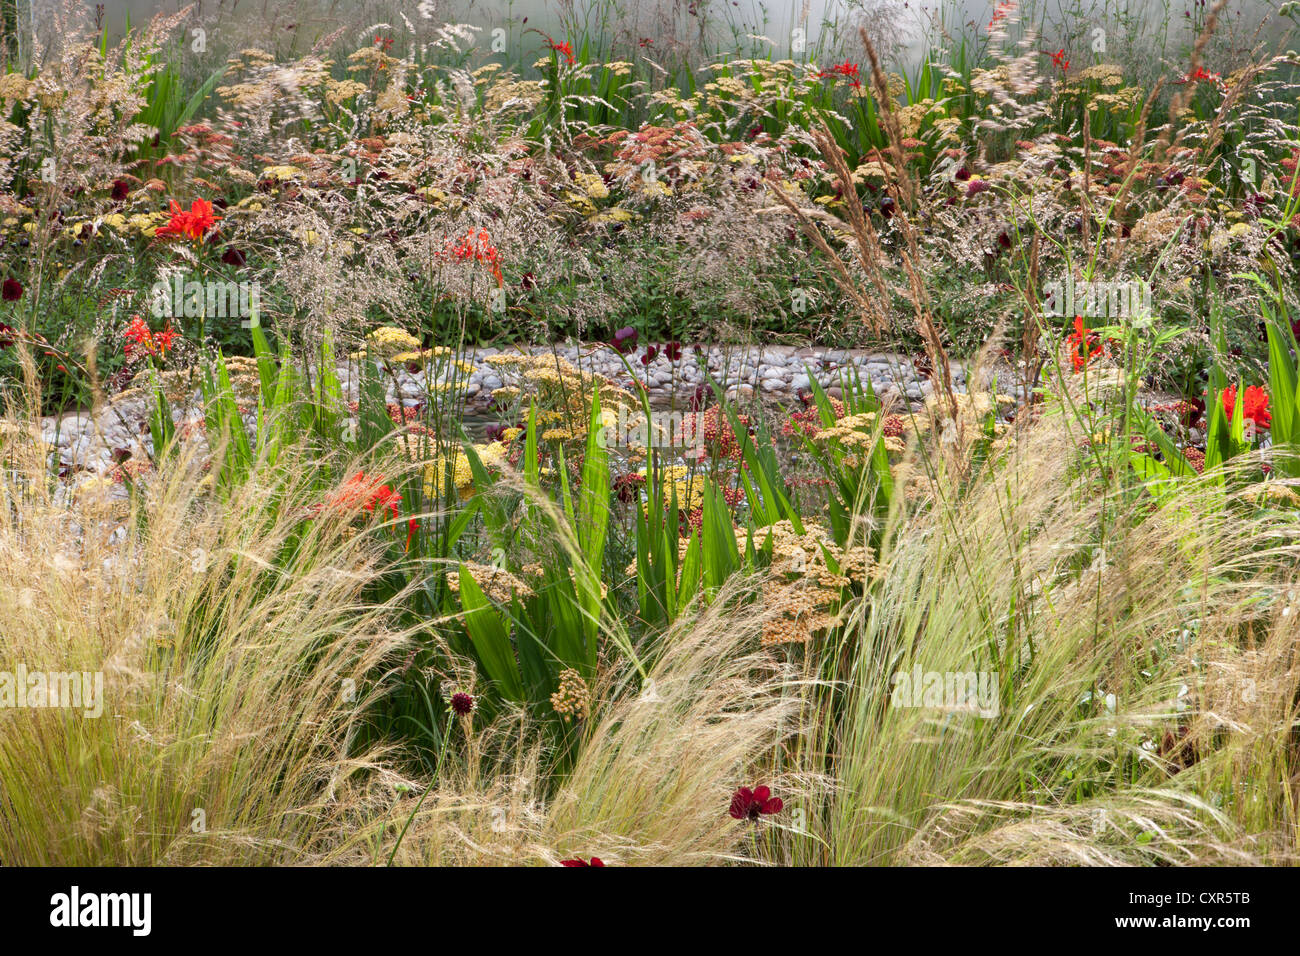 Sommergarten mit gemischten Ziergräsern Gras und bunten Blumen Grenze mit einem kleinen Teich Wasser Feature UK Stockfoto